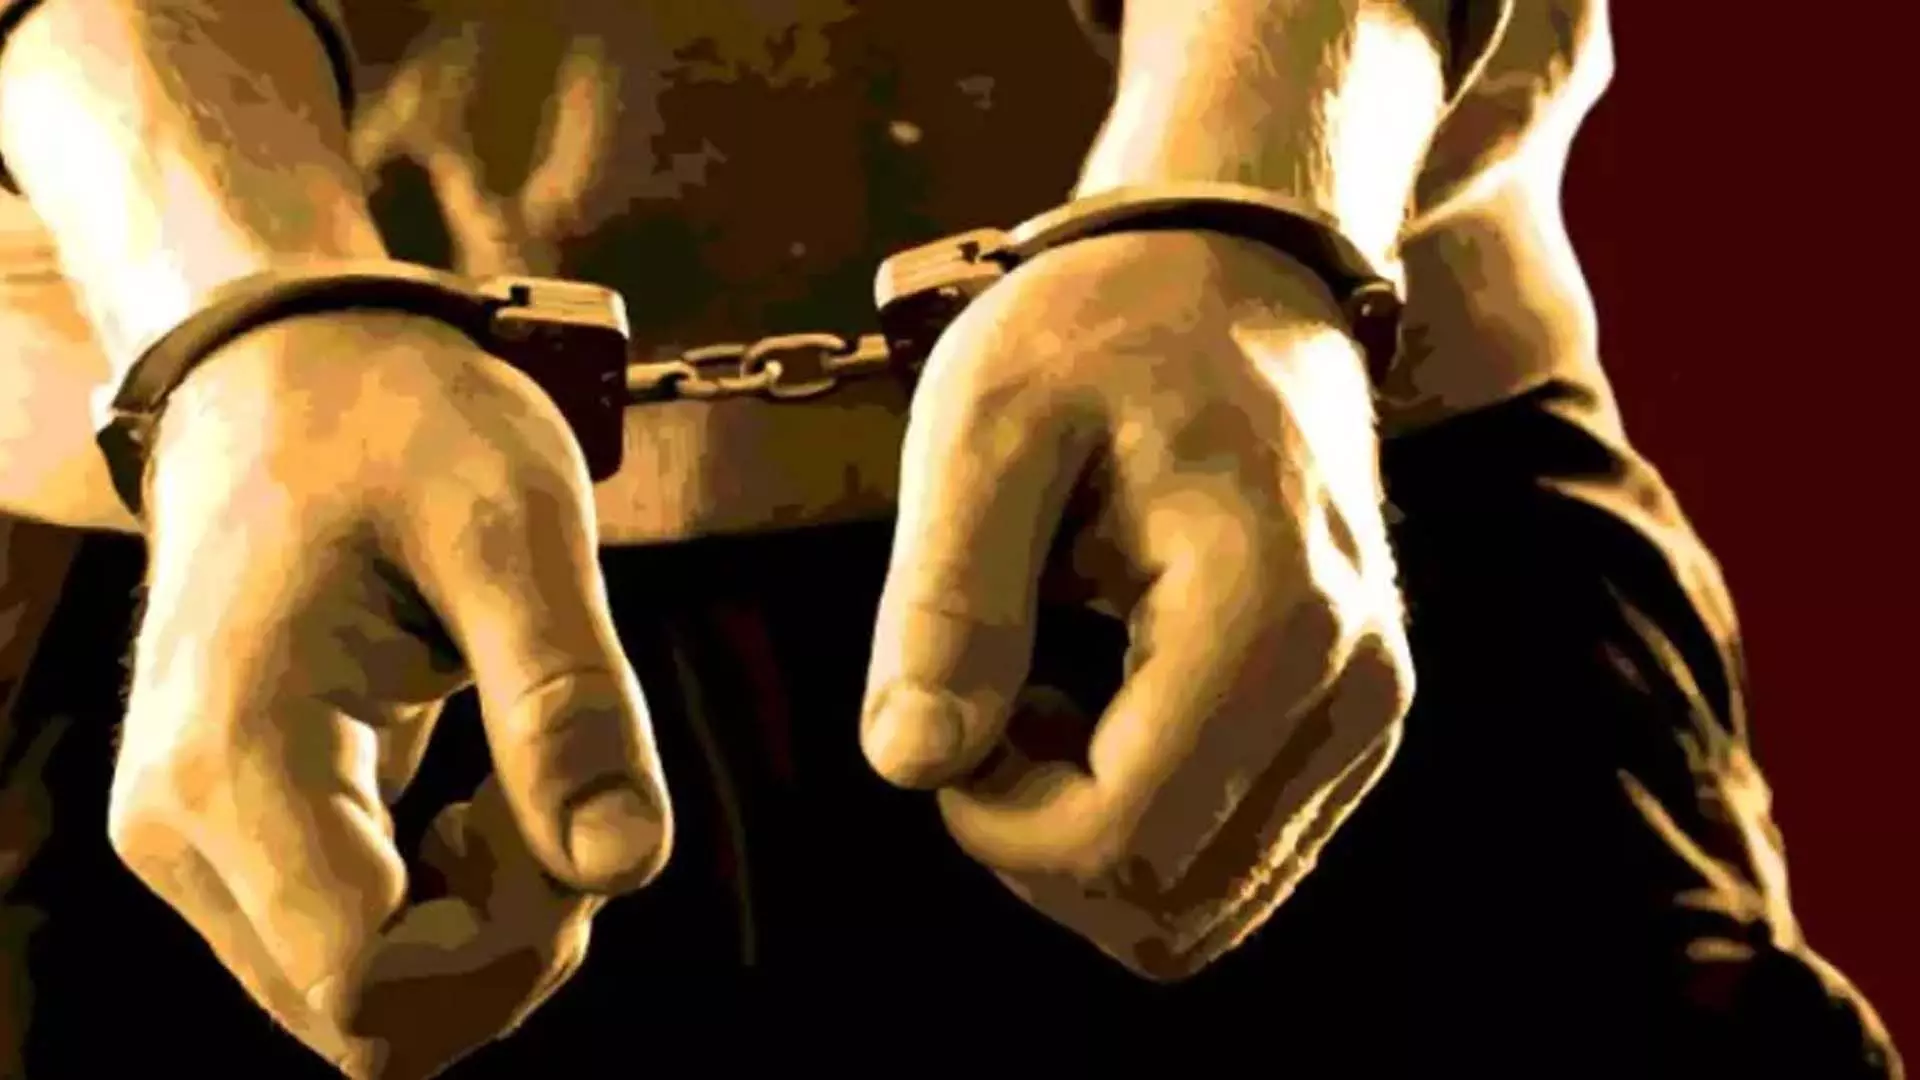 पुलिस ने लश्कर के चार सहयोगियों को गिरफ्तार किया